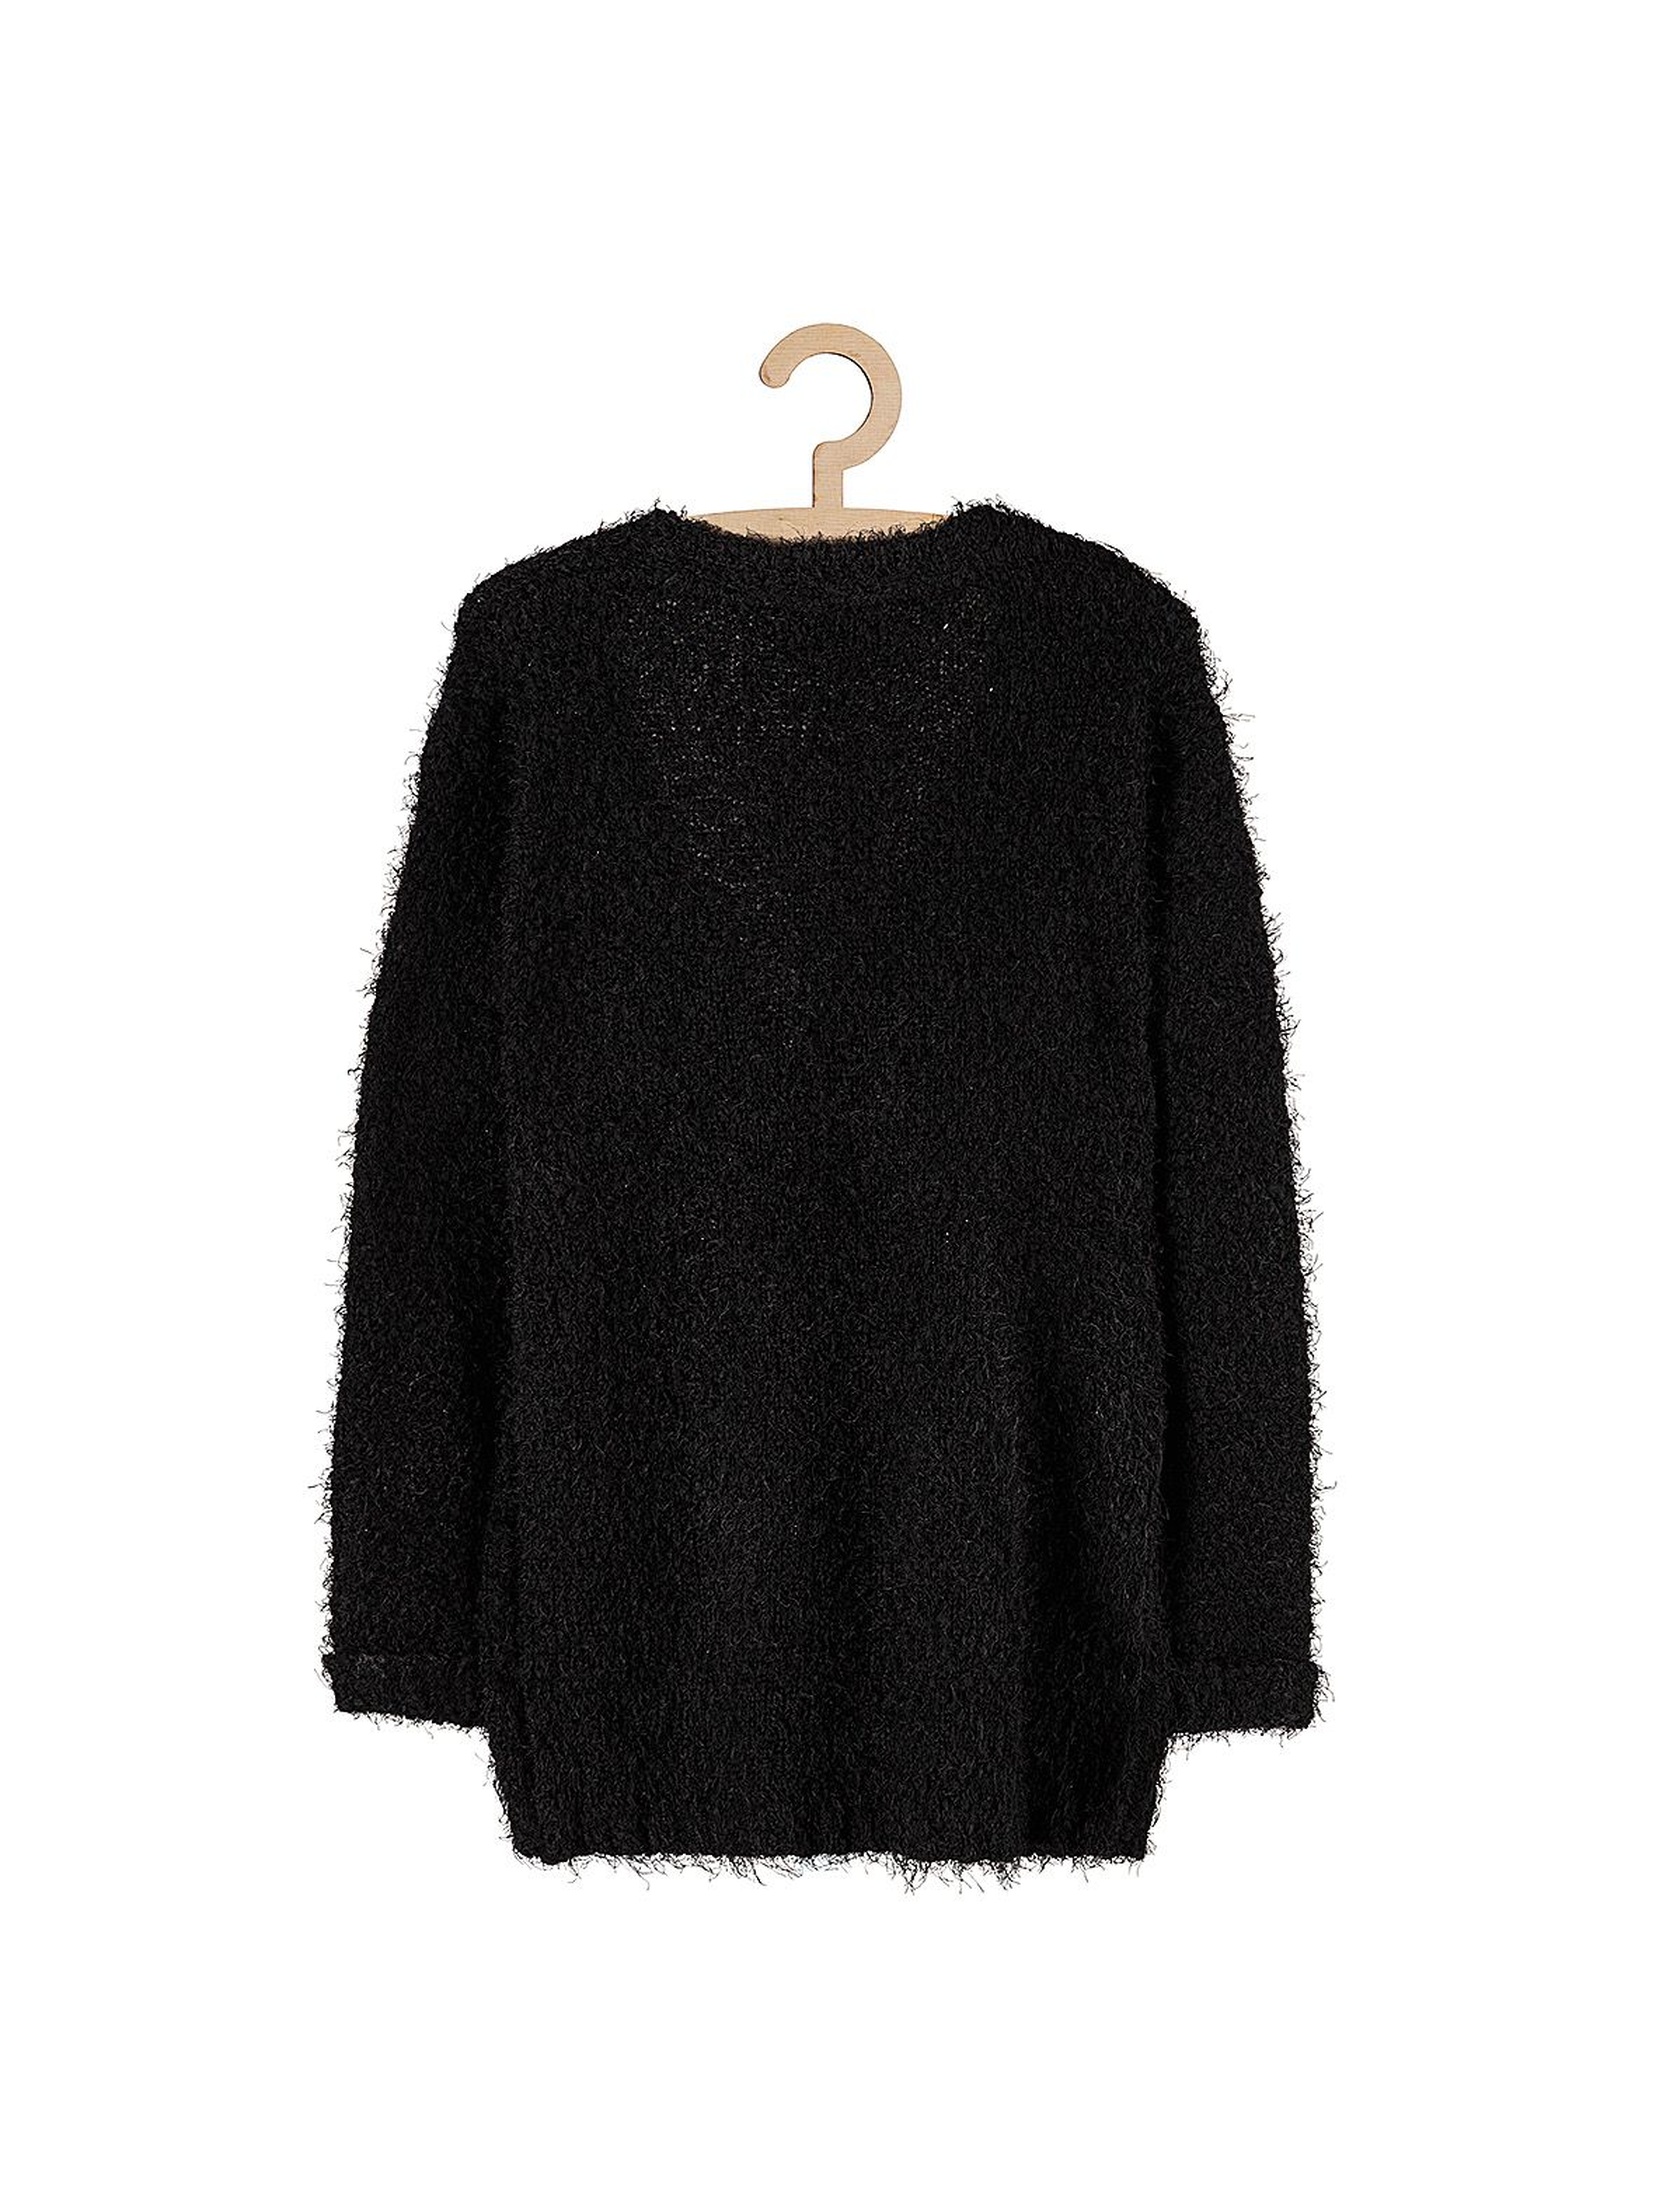 Sweter dziewczęcy czarny z kieszeniami